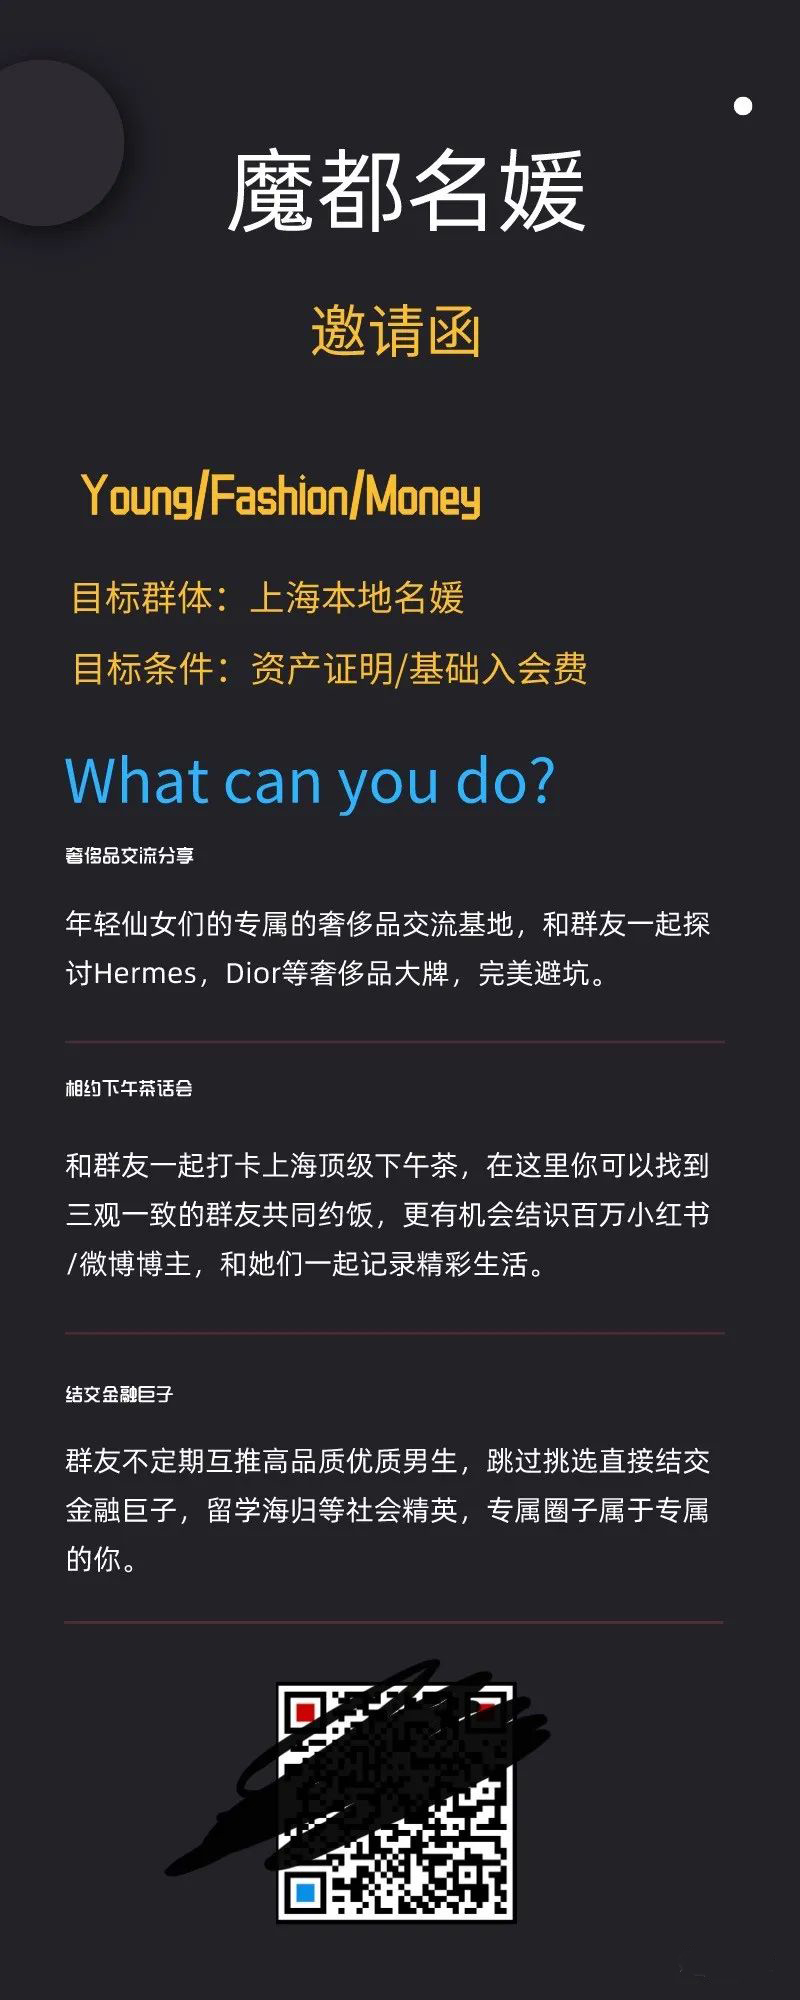 《微博》上海名媛群真实现状曝光